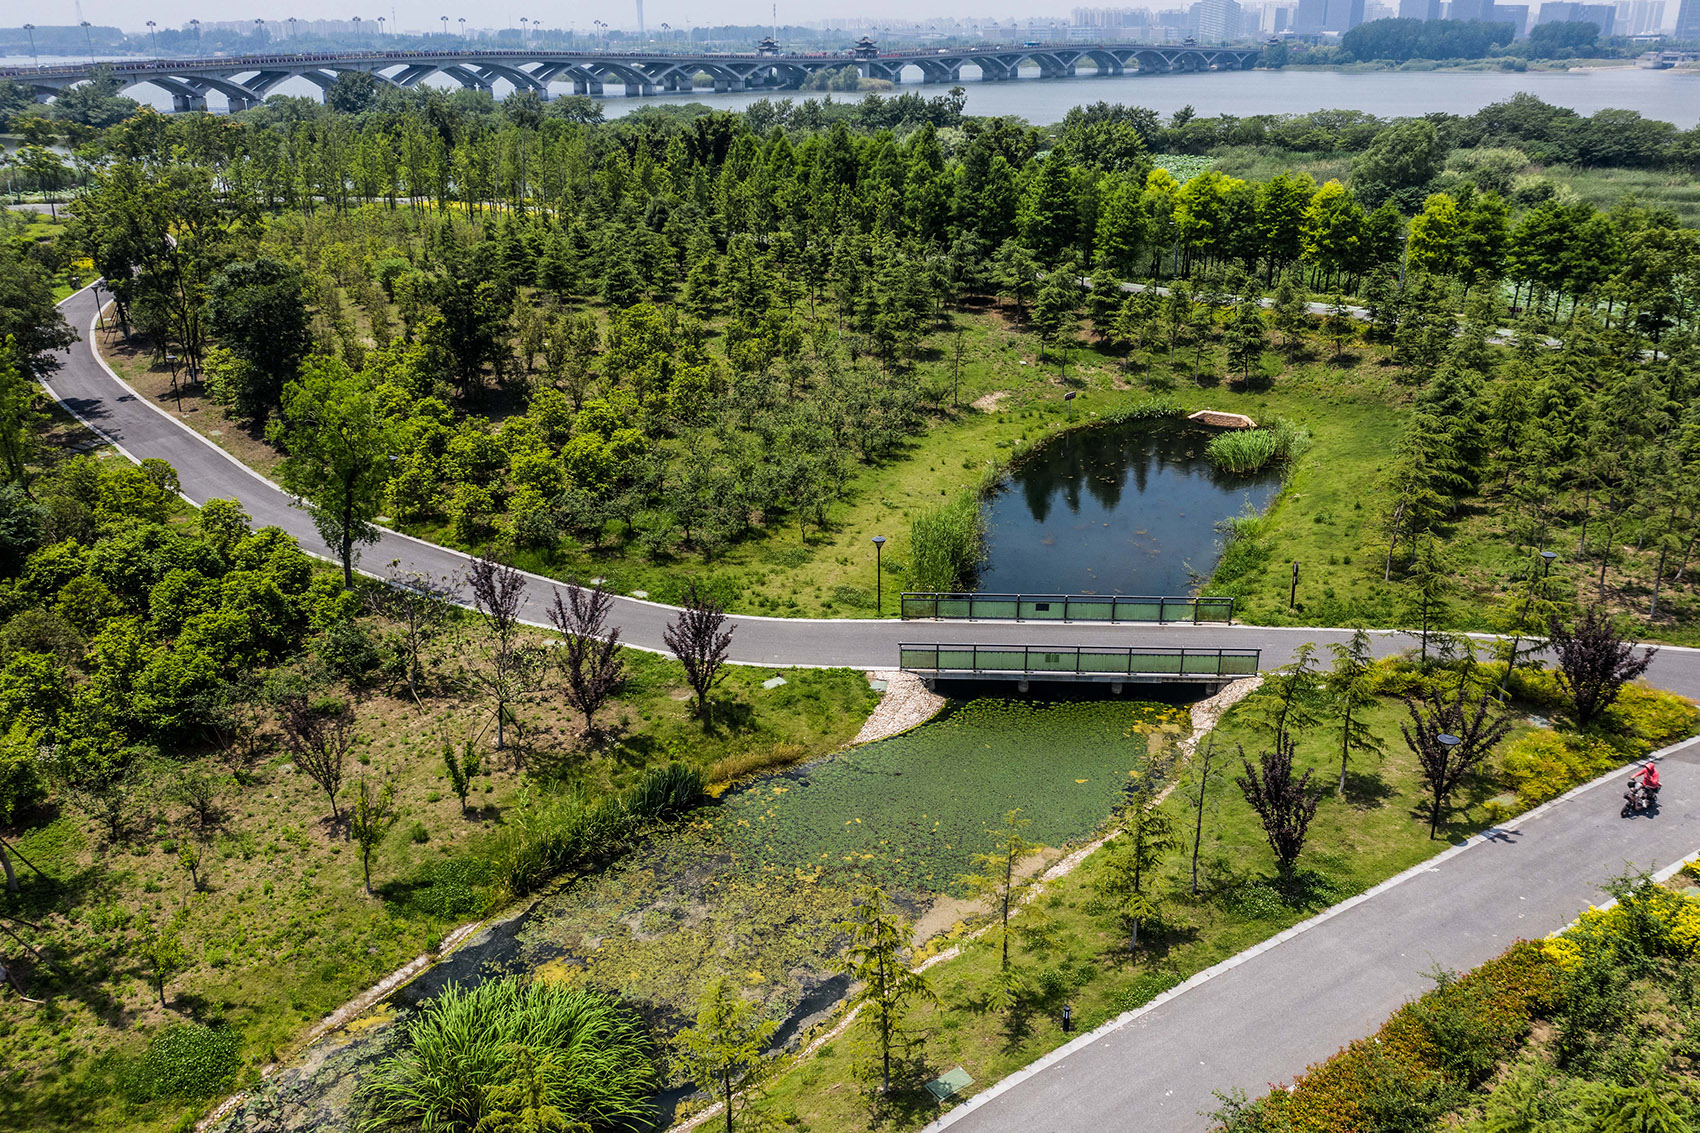 扬州的伟大复兴 &  廖家沟城市中央公园，扬州/迈向繁荣生态的后瘦西湖时代-91